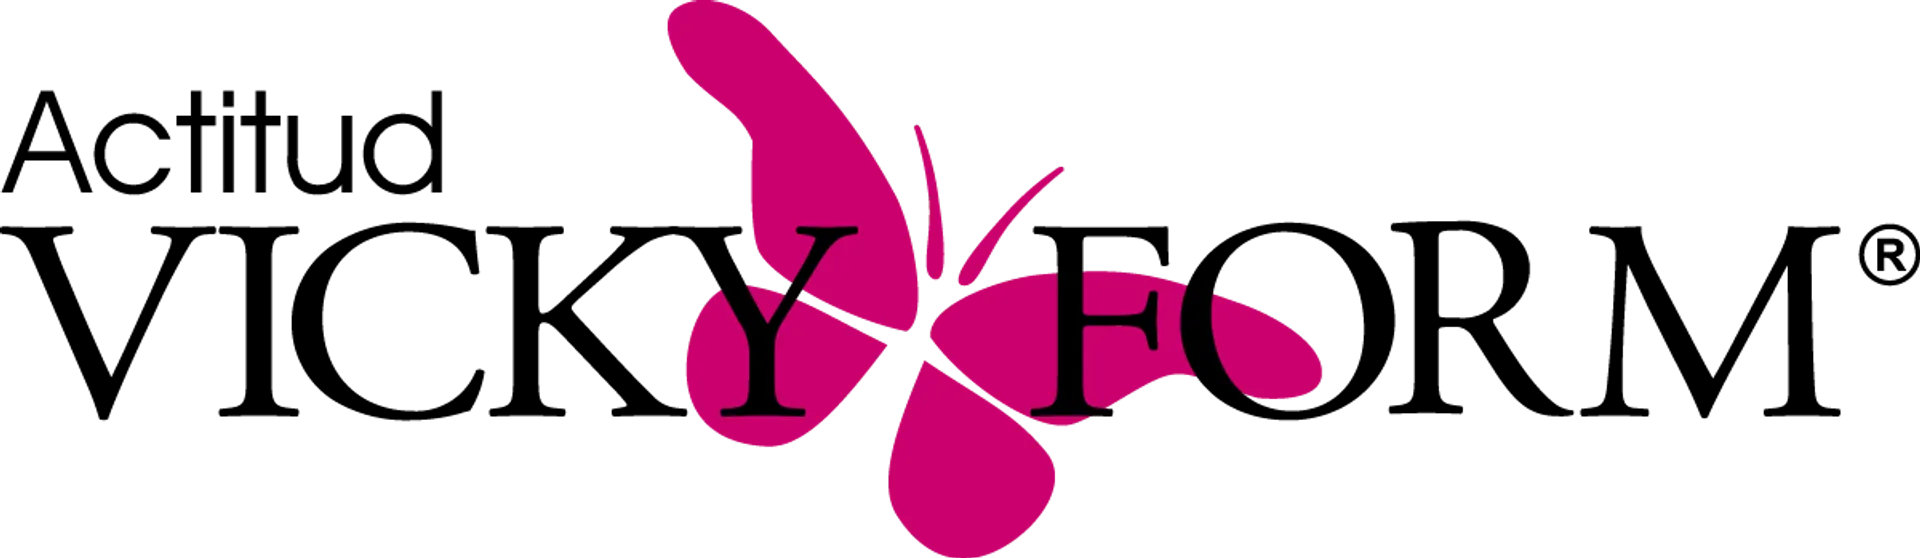 VICKY FORM logo